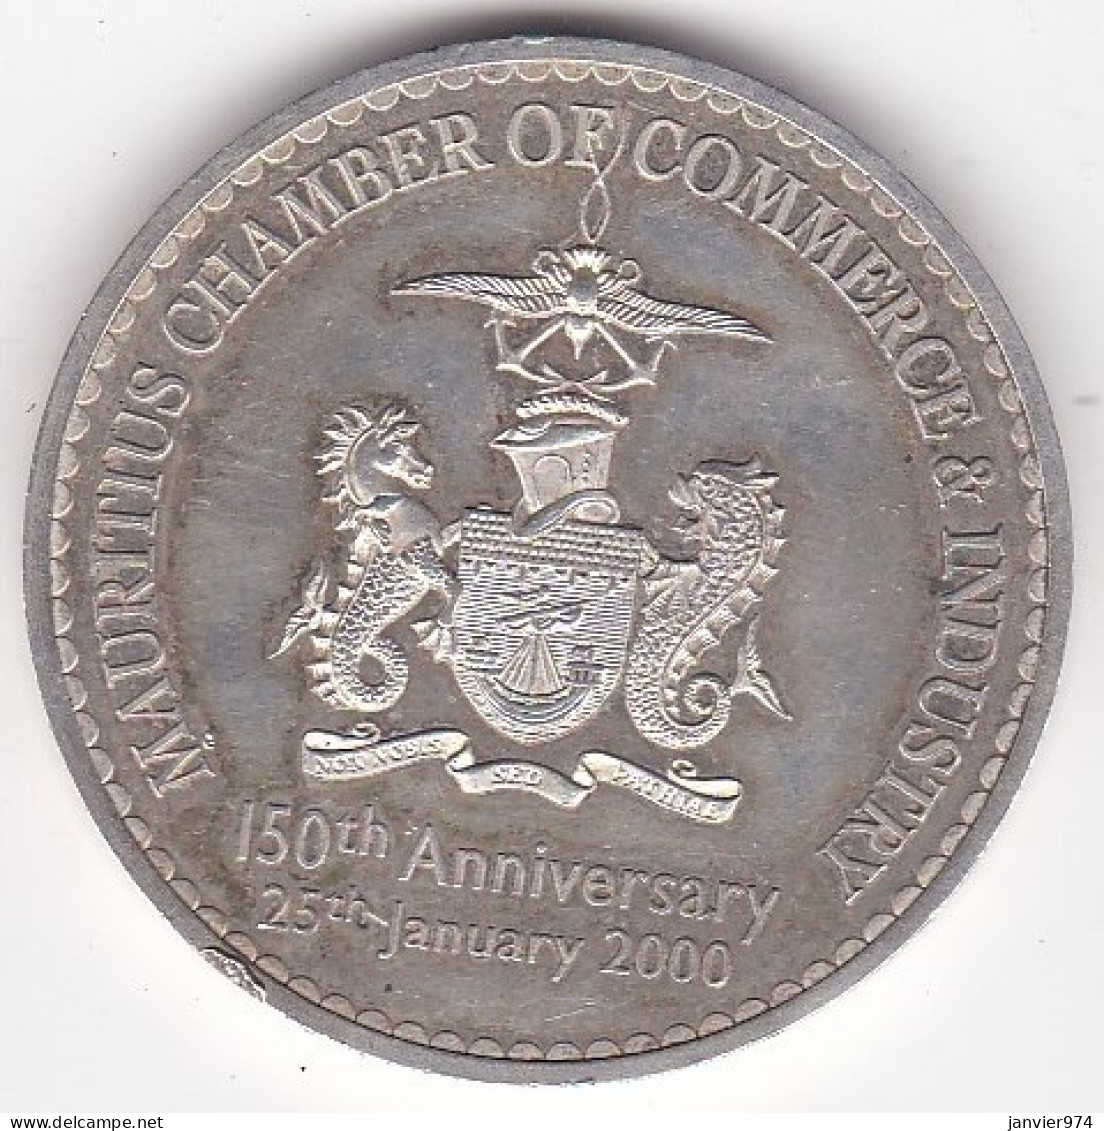 Ile Maurice 10 Rupees 2000, Chambre De Commerce Et D'Industrie Mauricienne En Argent, Très Rare, KM# 62 - Mauritius